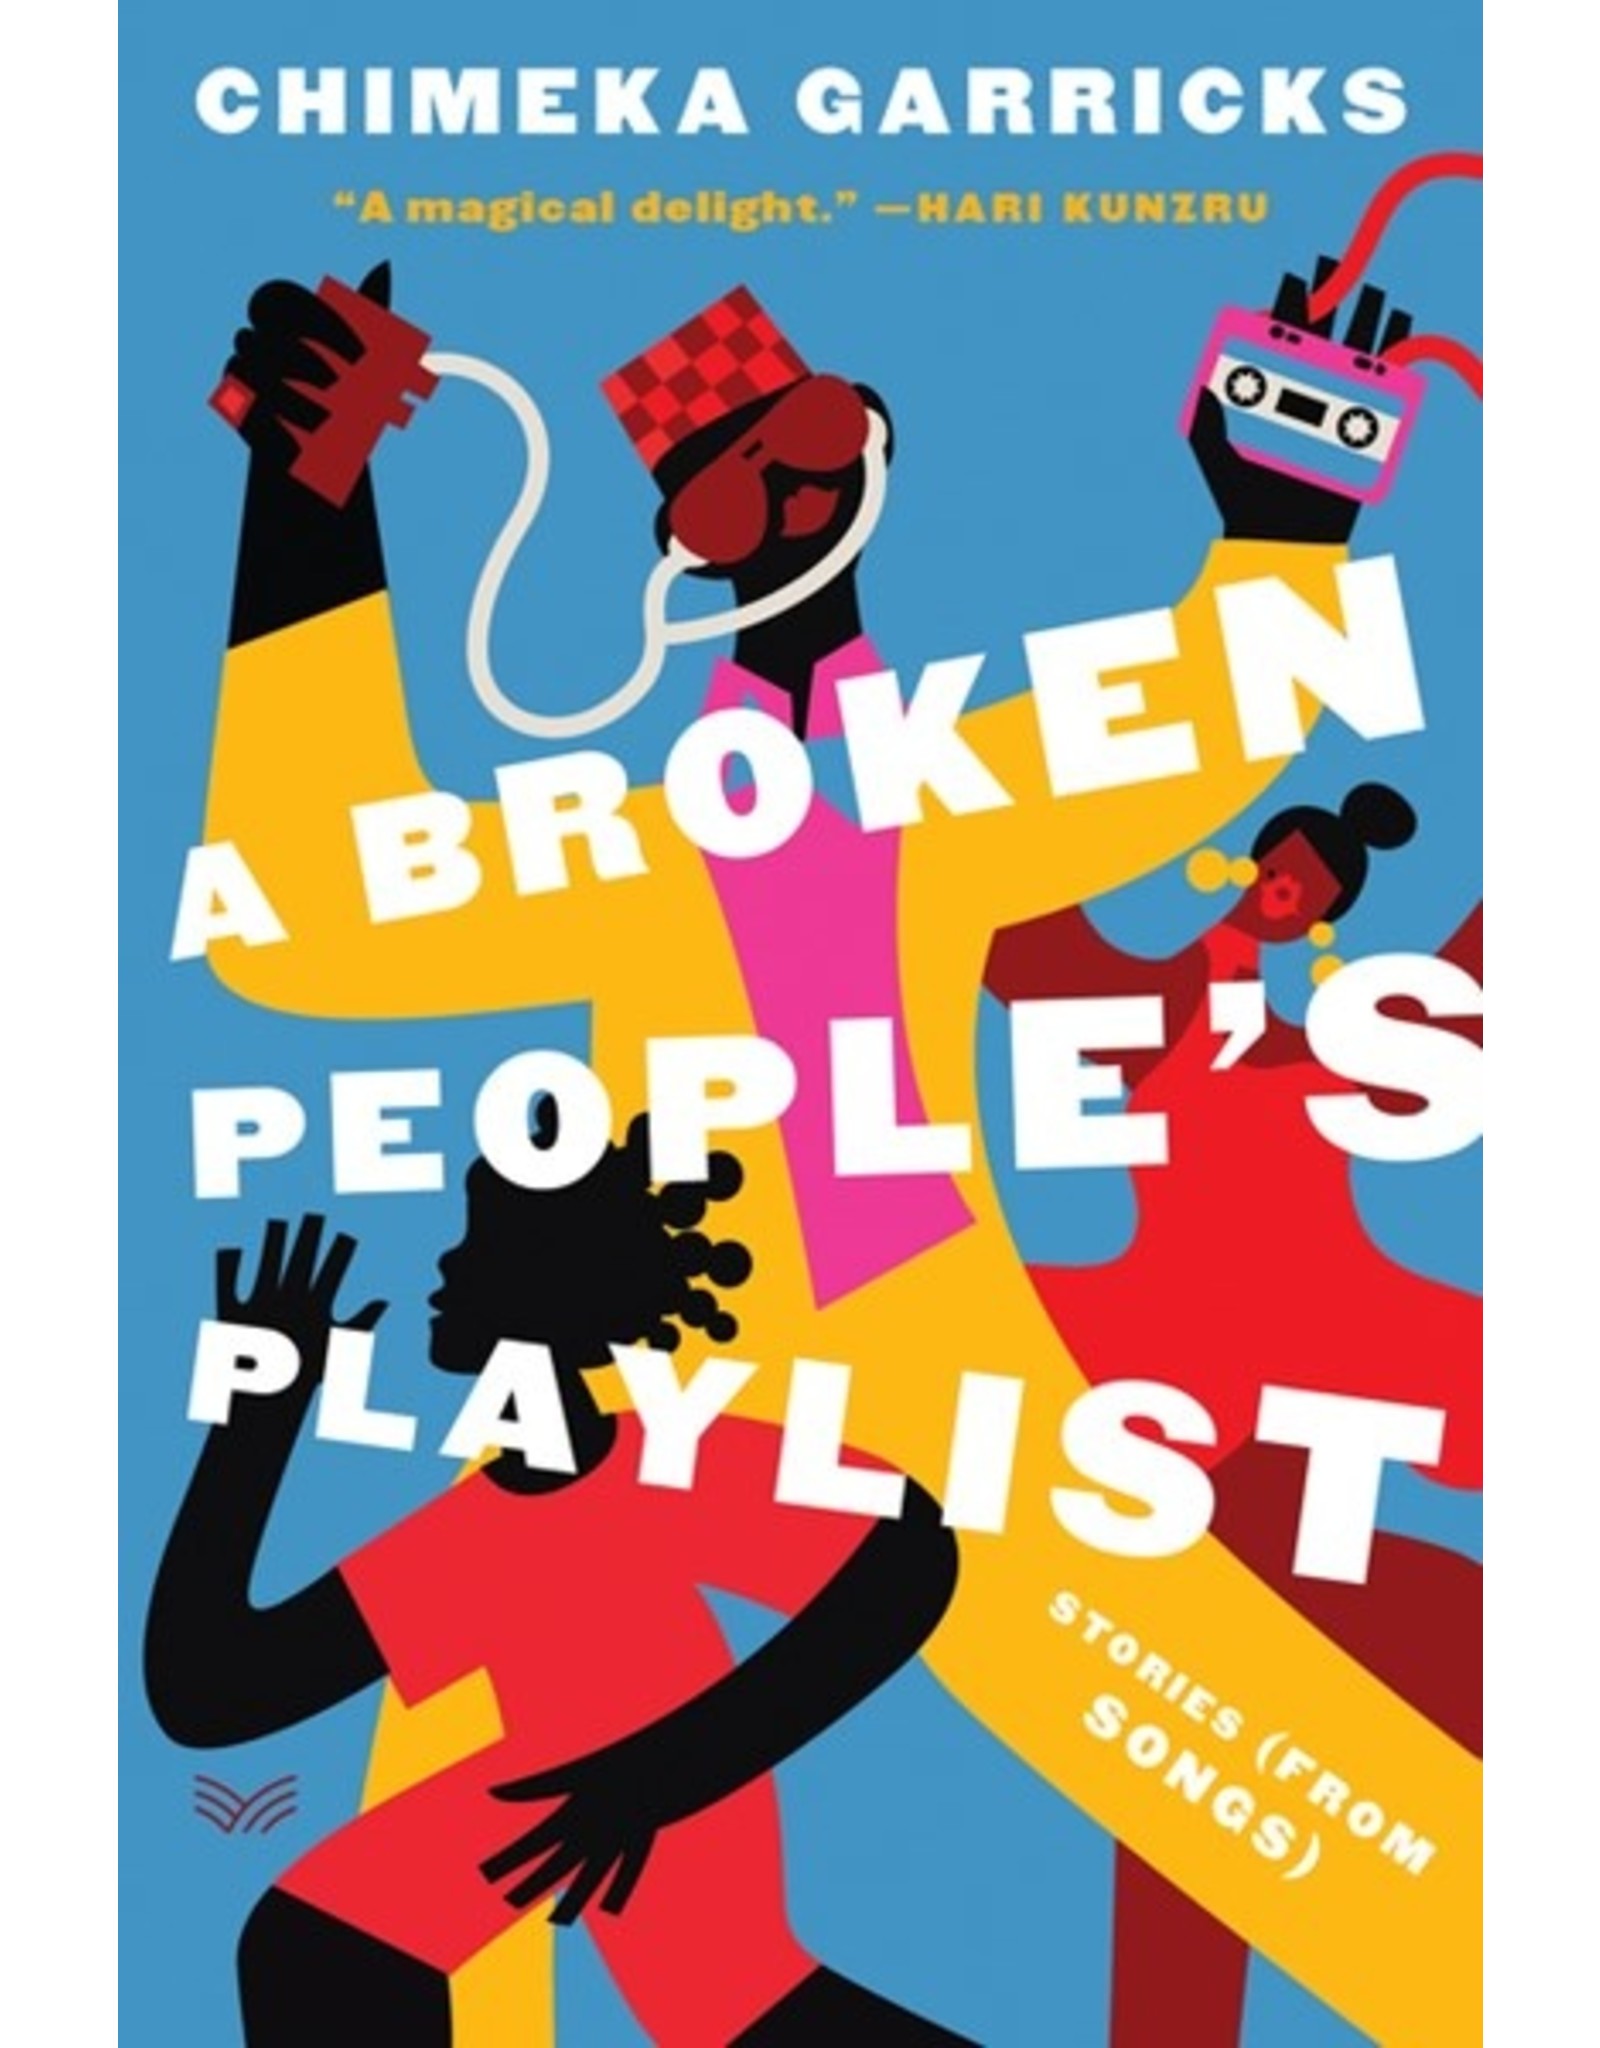 Books A Broken People's Playlist by Chimeka Garricks